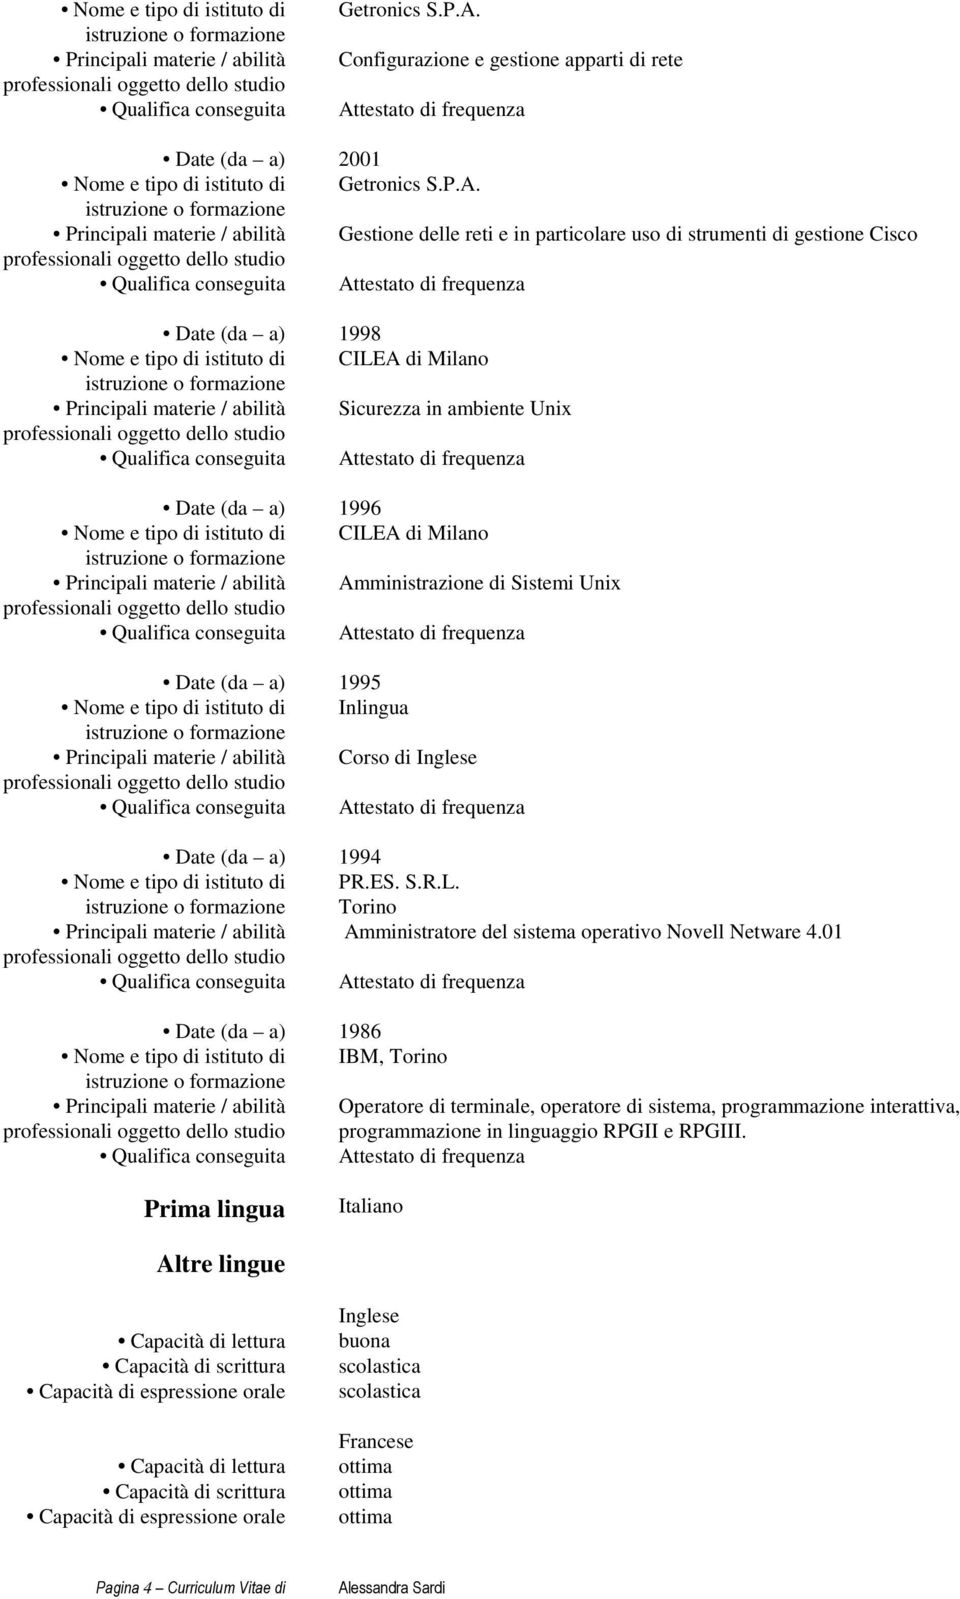 Principali materie / abilità Gestione delle reti e in particolare uso di strumenti di gestione Cisco Date (da a) 1998 CILEA di Milano Principali materie / abilità Sicurezza in ambiente Unix Date (da